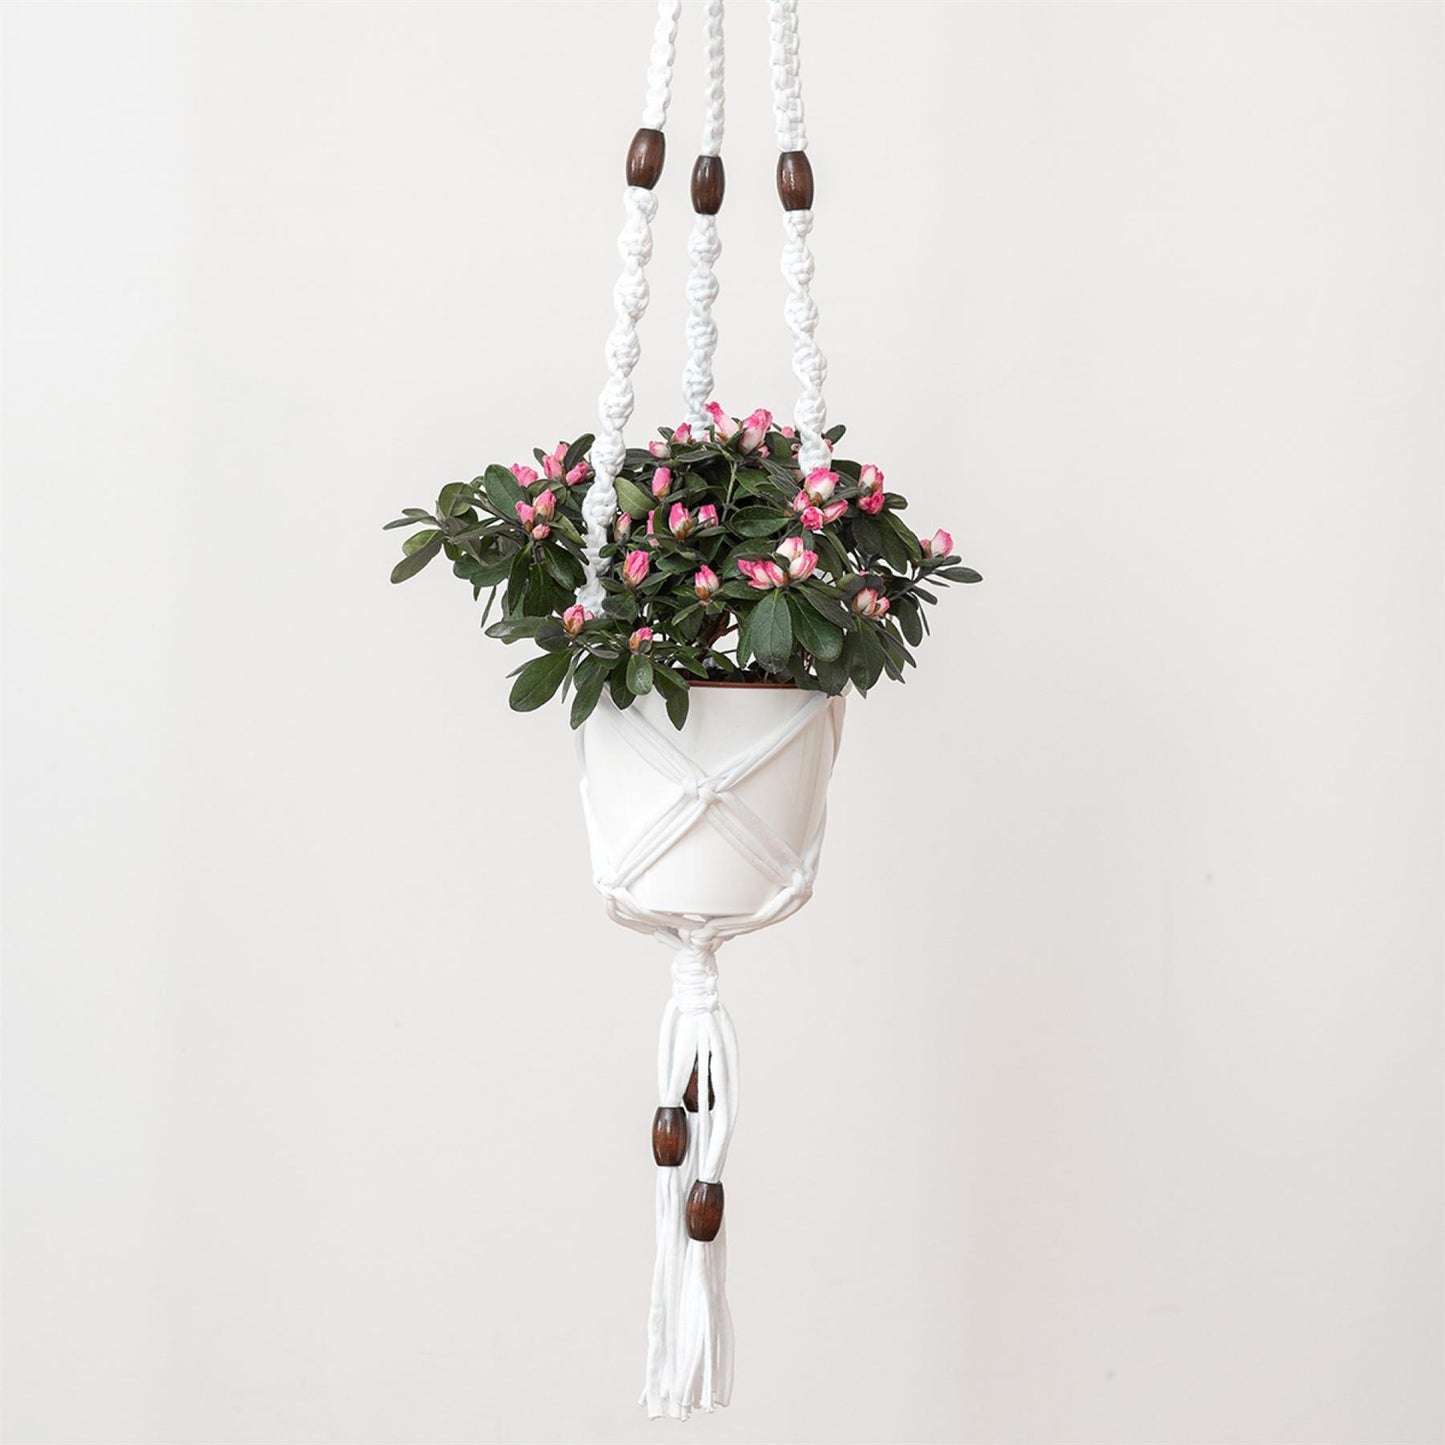 [Hoooked] PAK1622 Zpagetti White Cotton Hanging Basket Macrame Kit